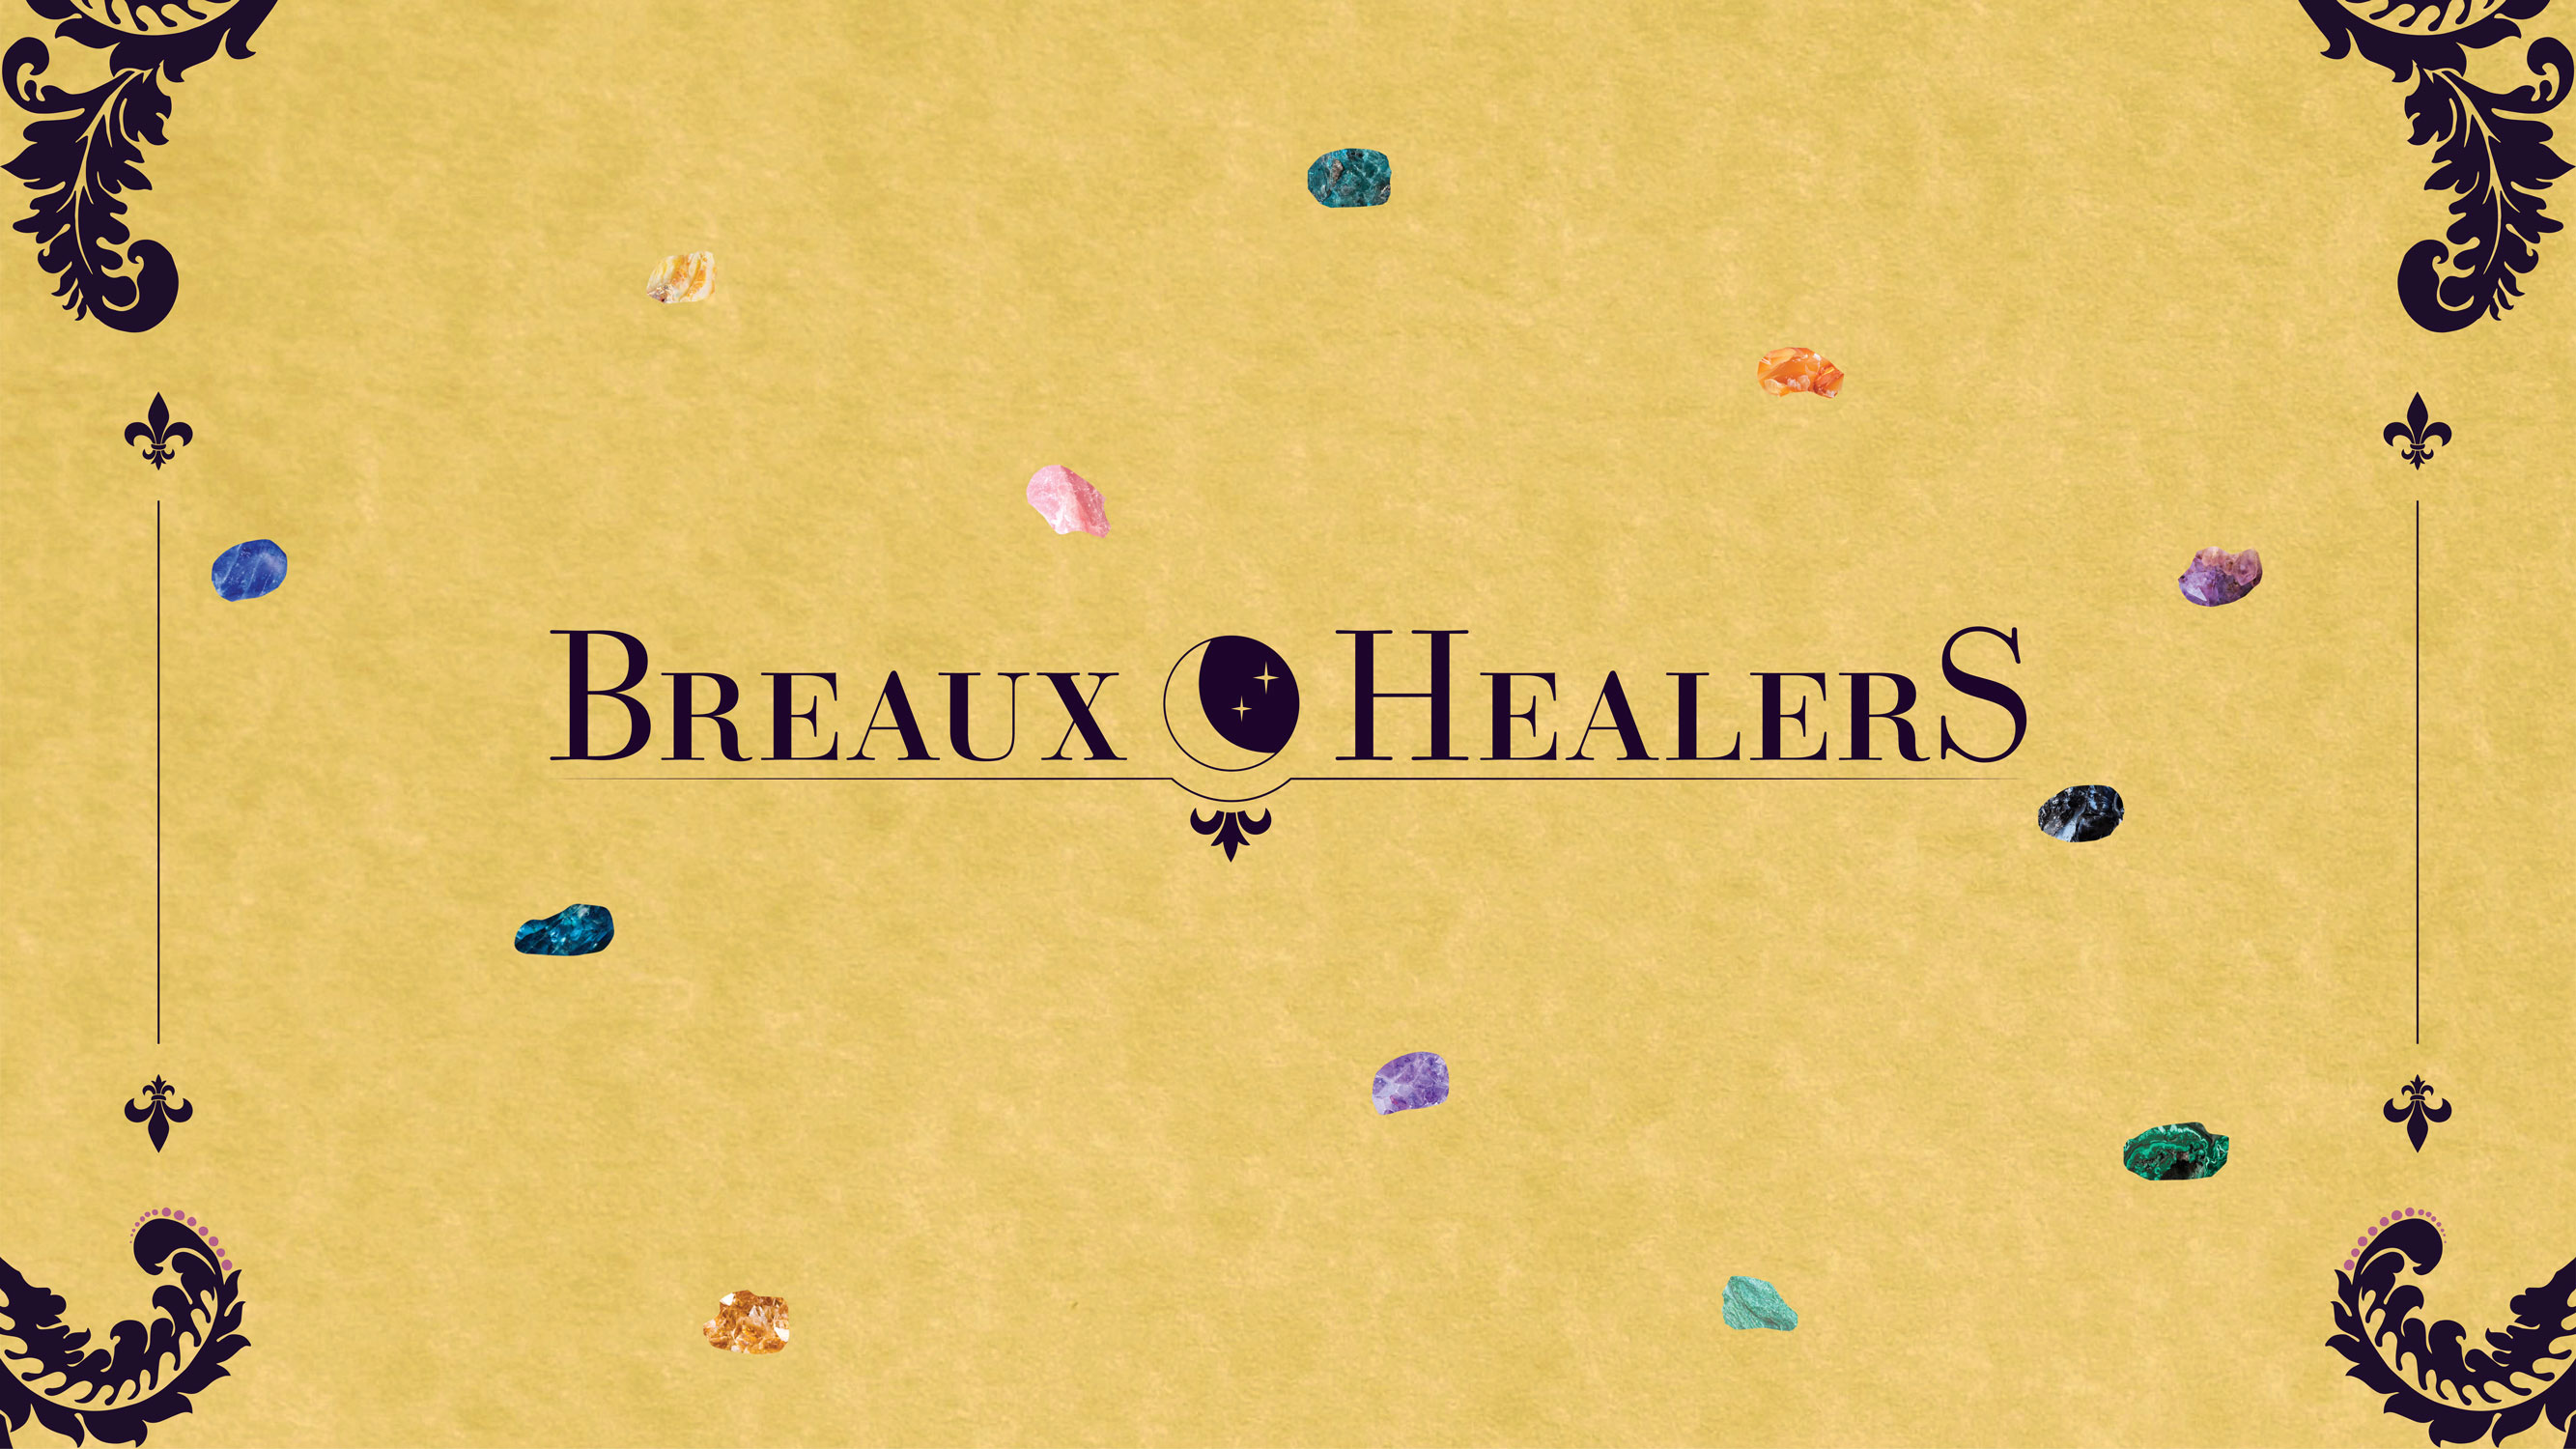 Breaux Healers banner